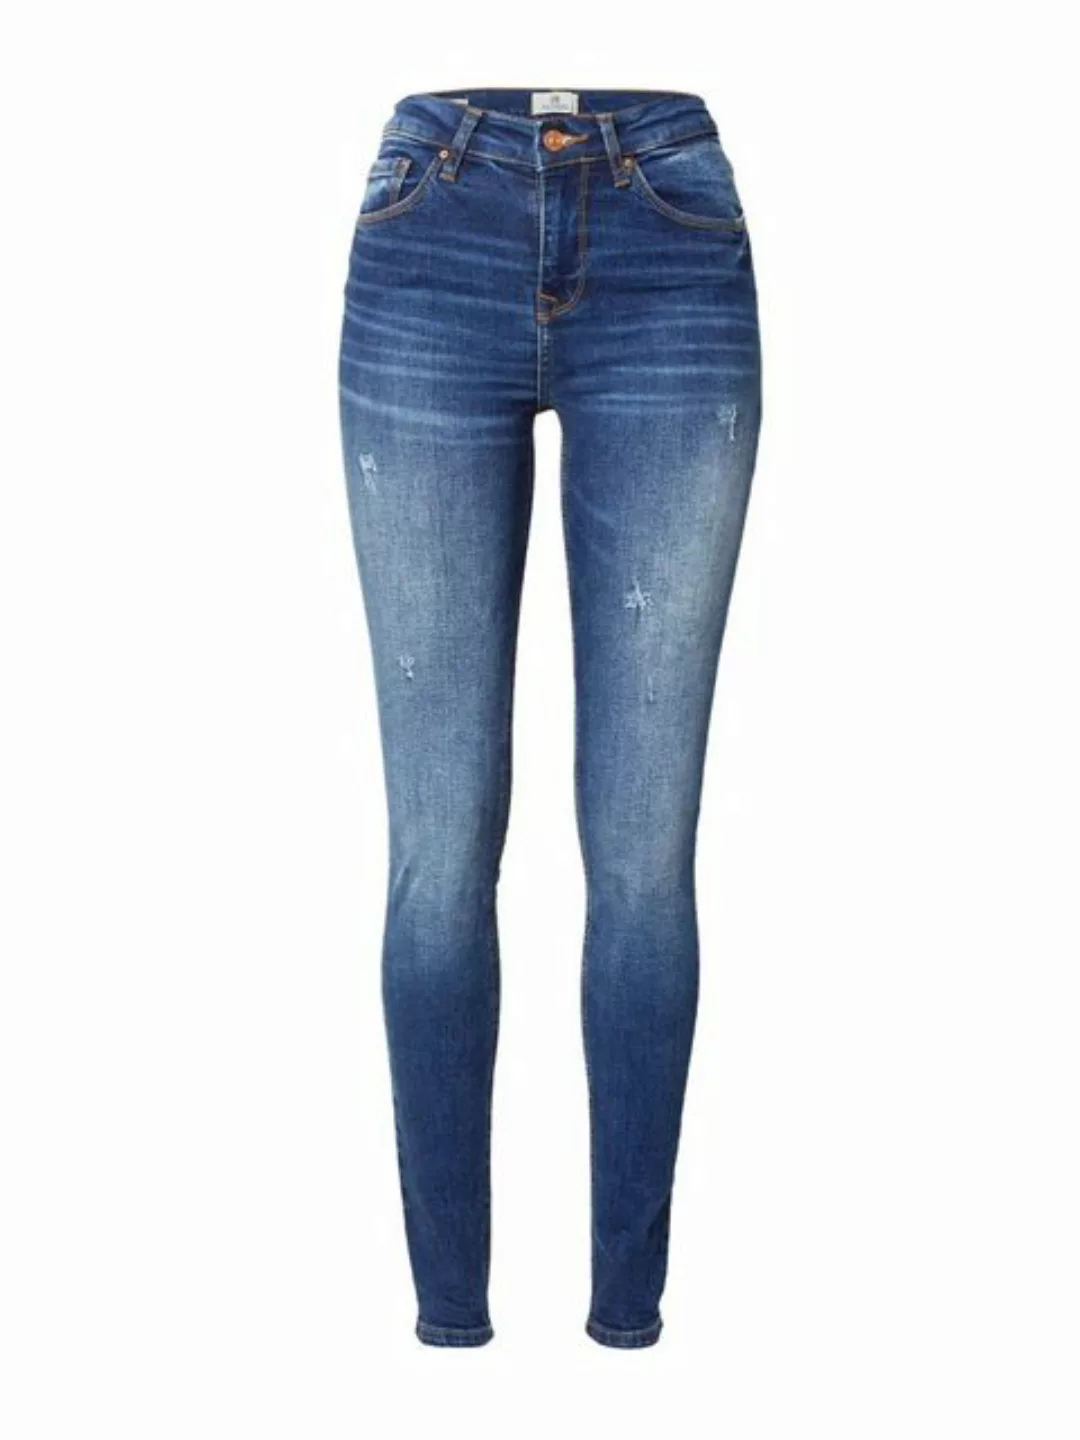 LTB Slim-fit-Jeans Amy X in angesagter Waschung günstig online kaufen